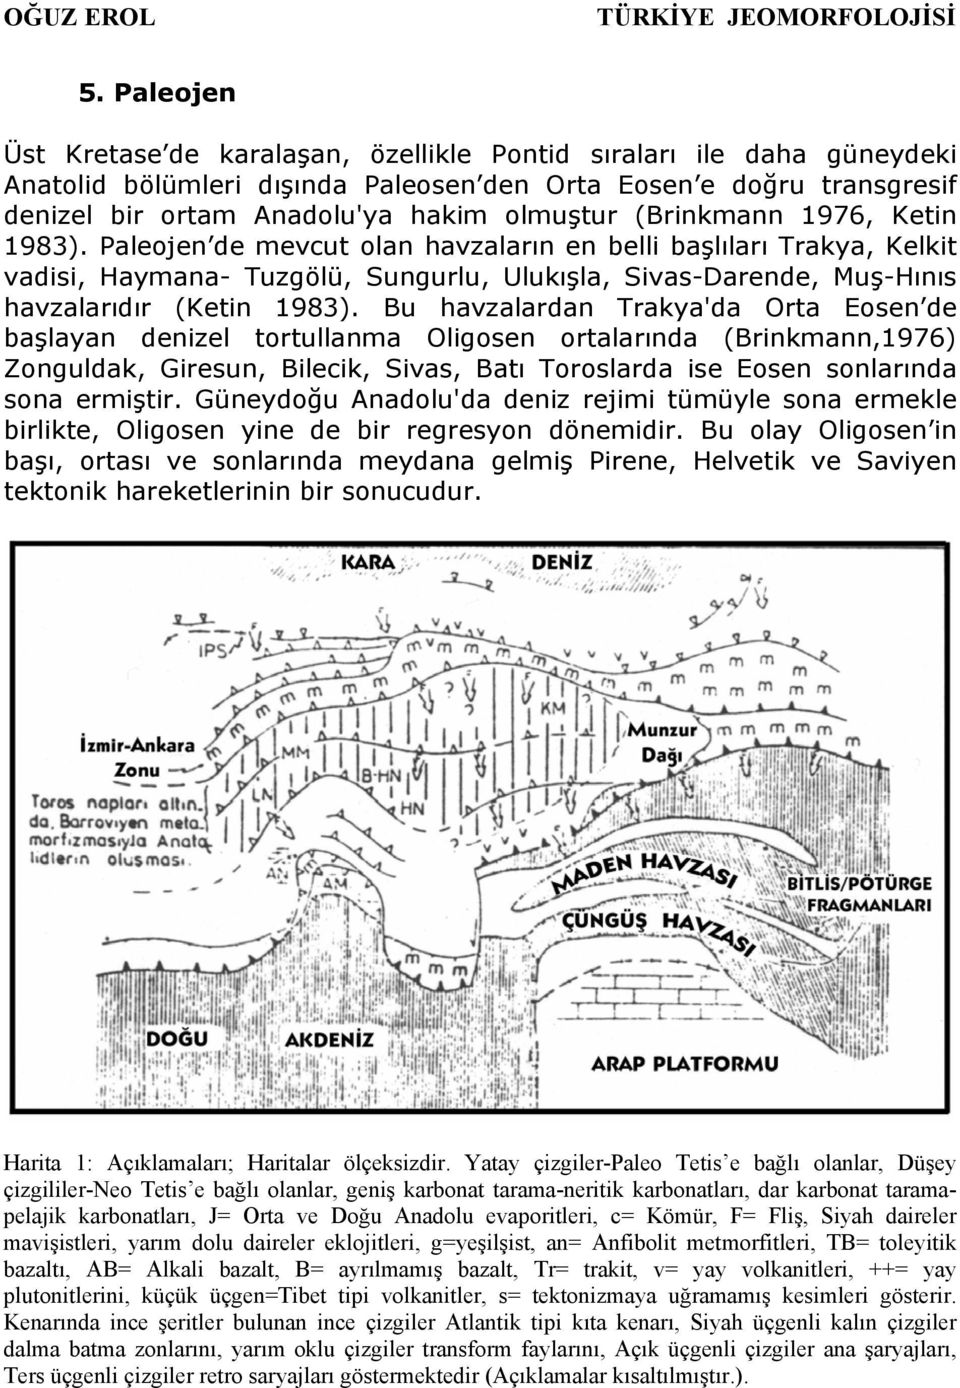 Bu havzalardan Trakya'da Orta Eosen de başlayan denizel tortullanma Oligosen ortalarında (Brinkmann,1976) Zonguldak, Giresun, Bilecik, Sivas, Batı Toroslarda ise Eosen sonlarında sona ermiştir.